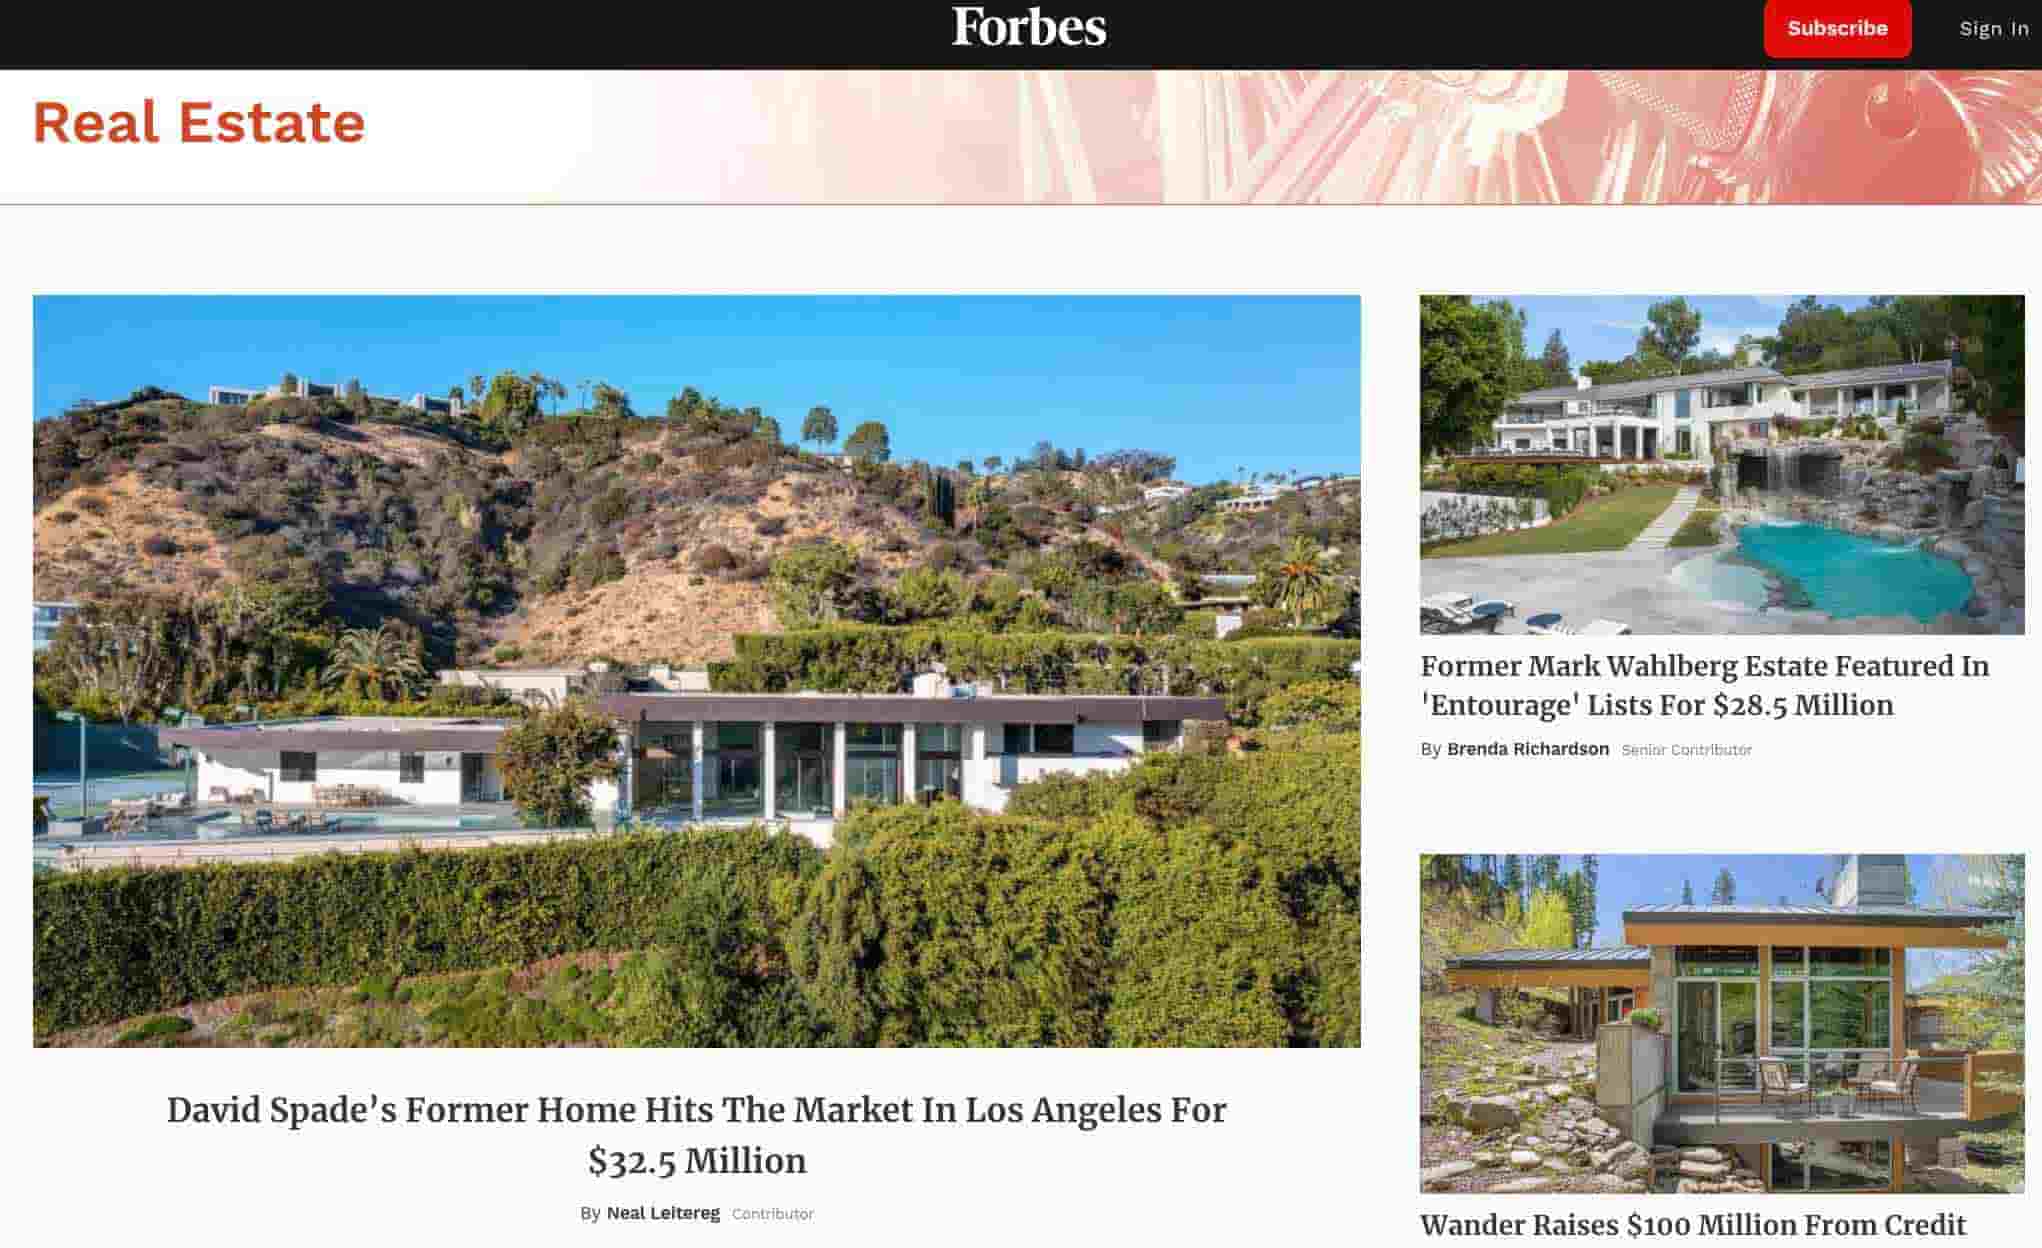  Forbes real estate blog